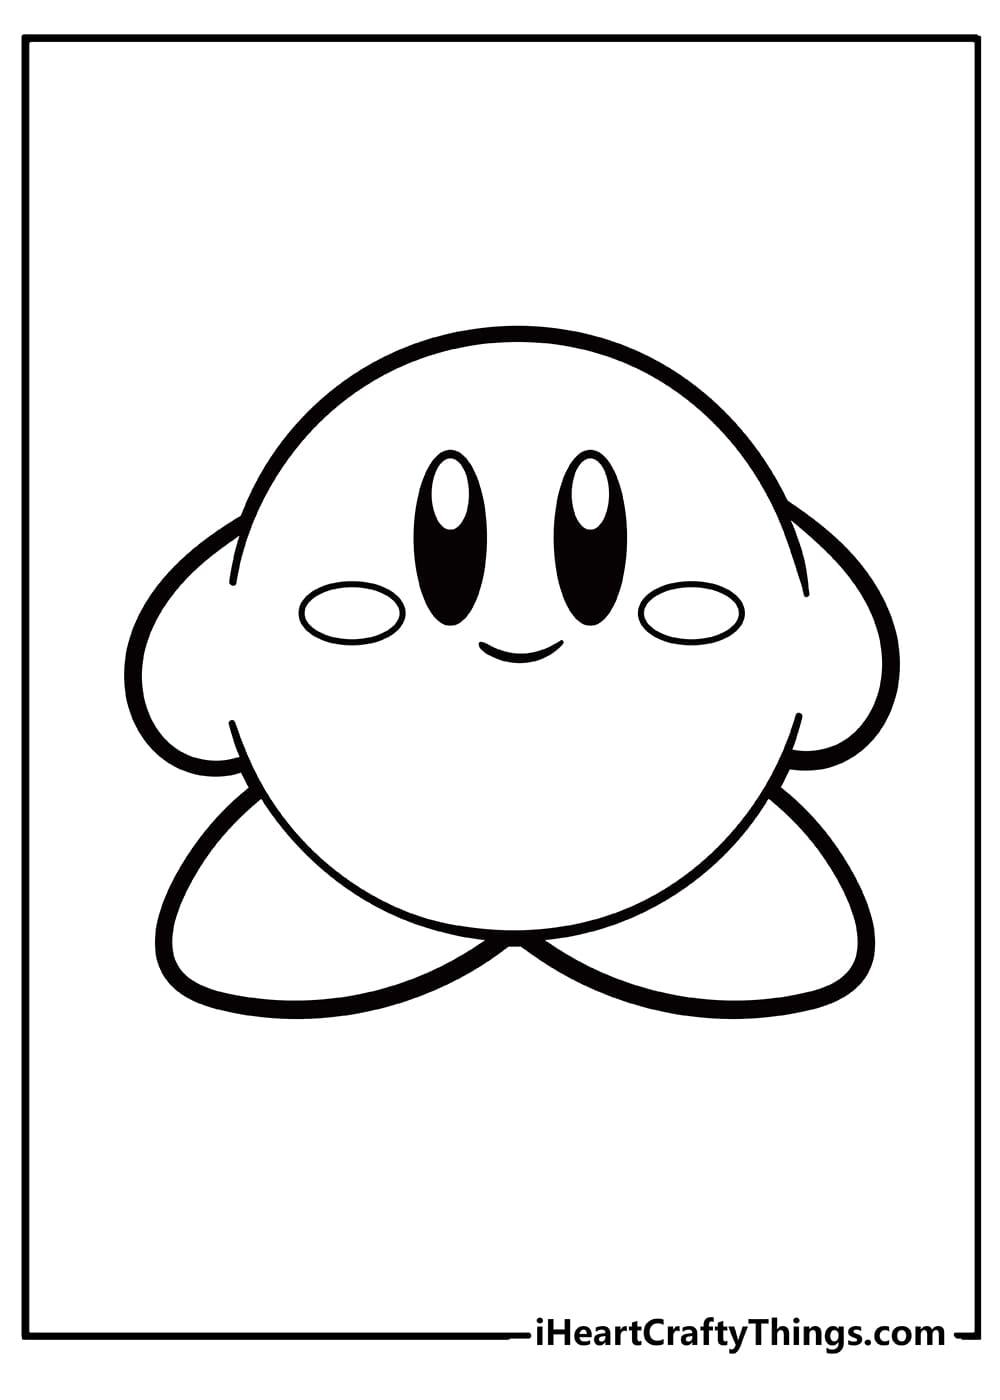 Kirby Image